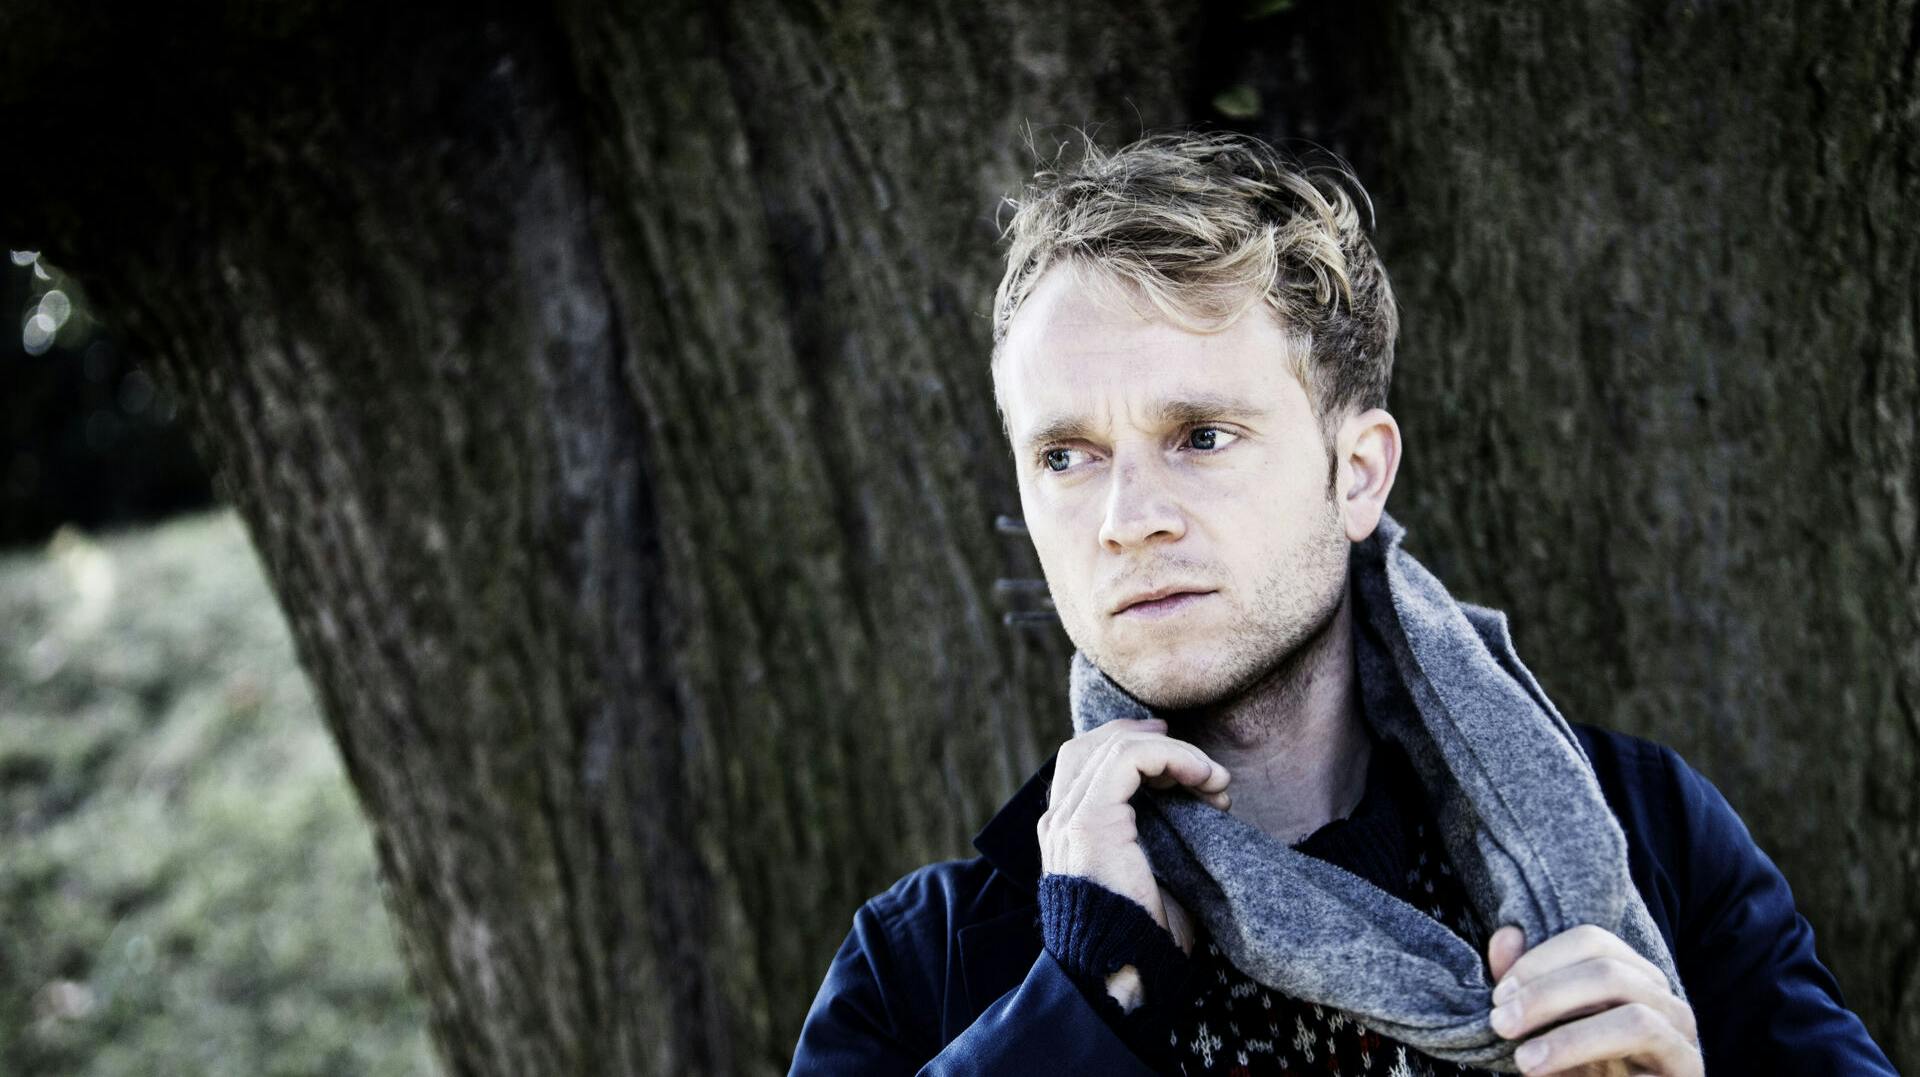 Laus Høybye springer ud som sangstjerne og udgiver nu sit eget musik.